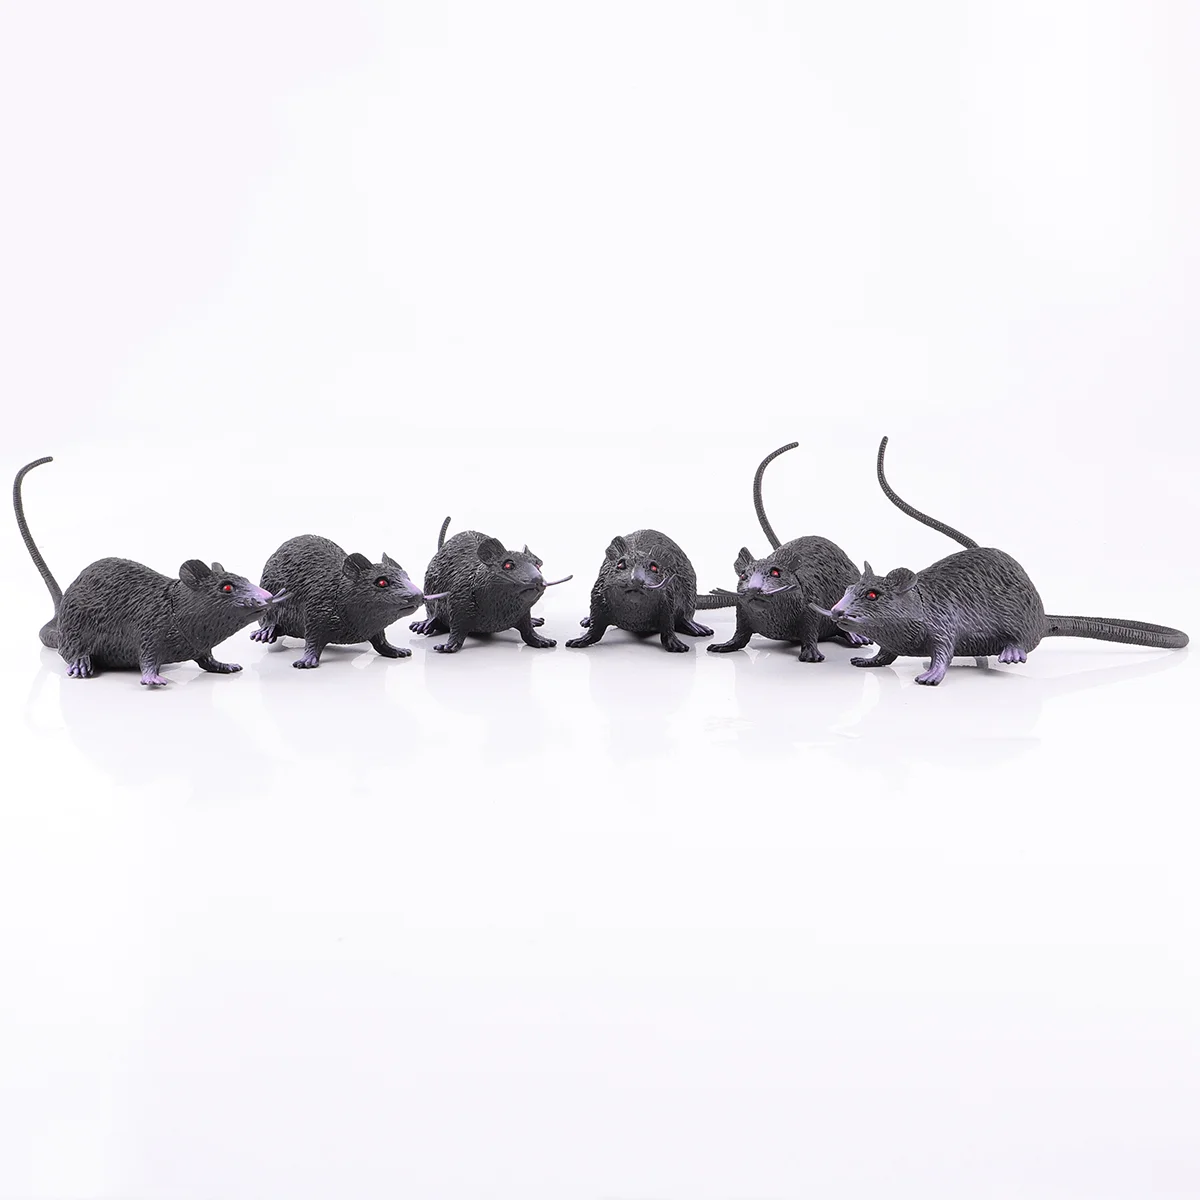 

6 крыс, сжимаемые крысы, Реалистичная черная крыса с красными глазами для декора или шуточных трюков